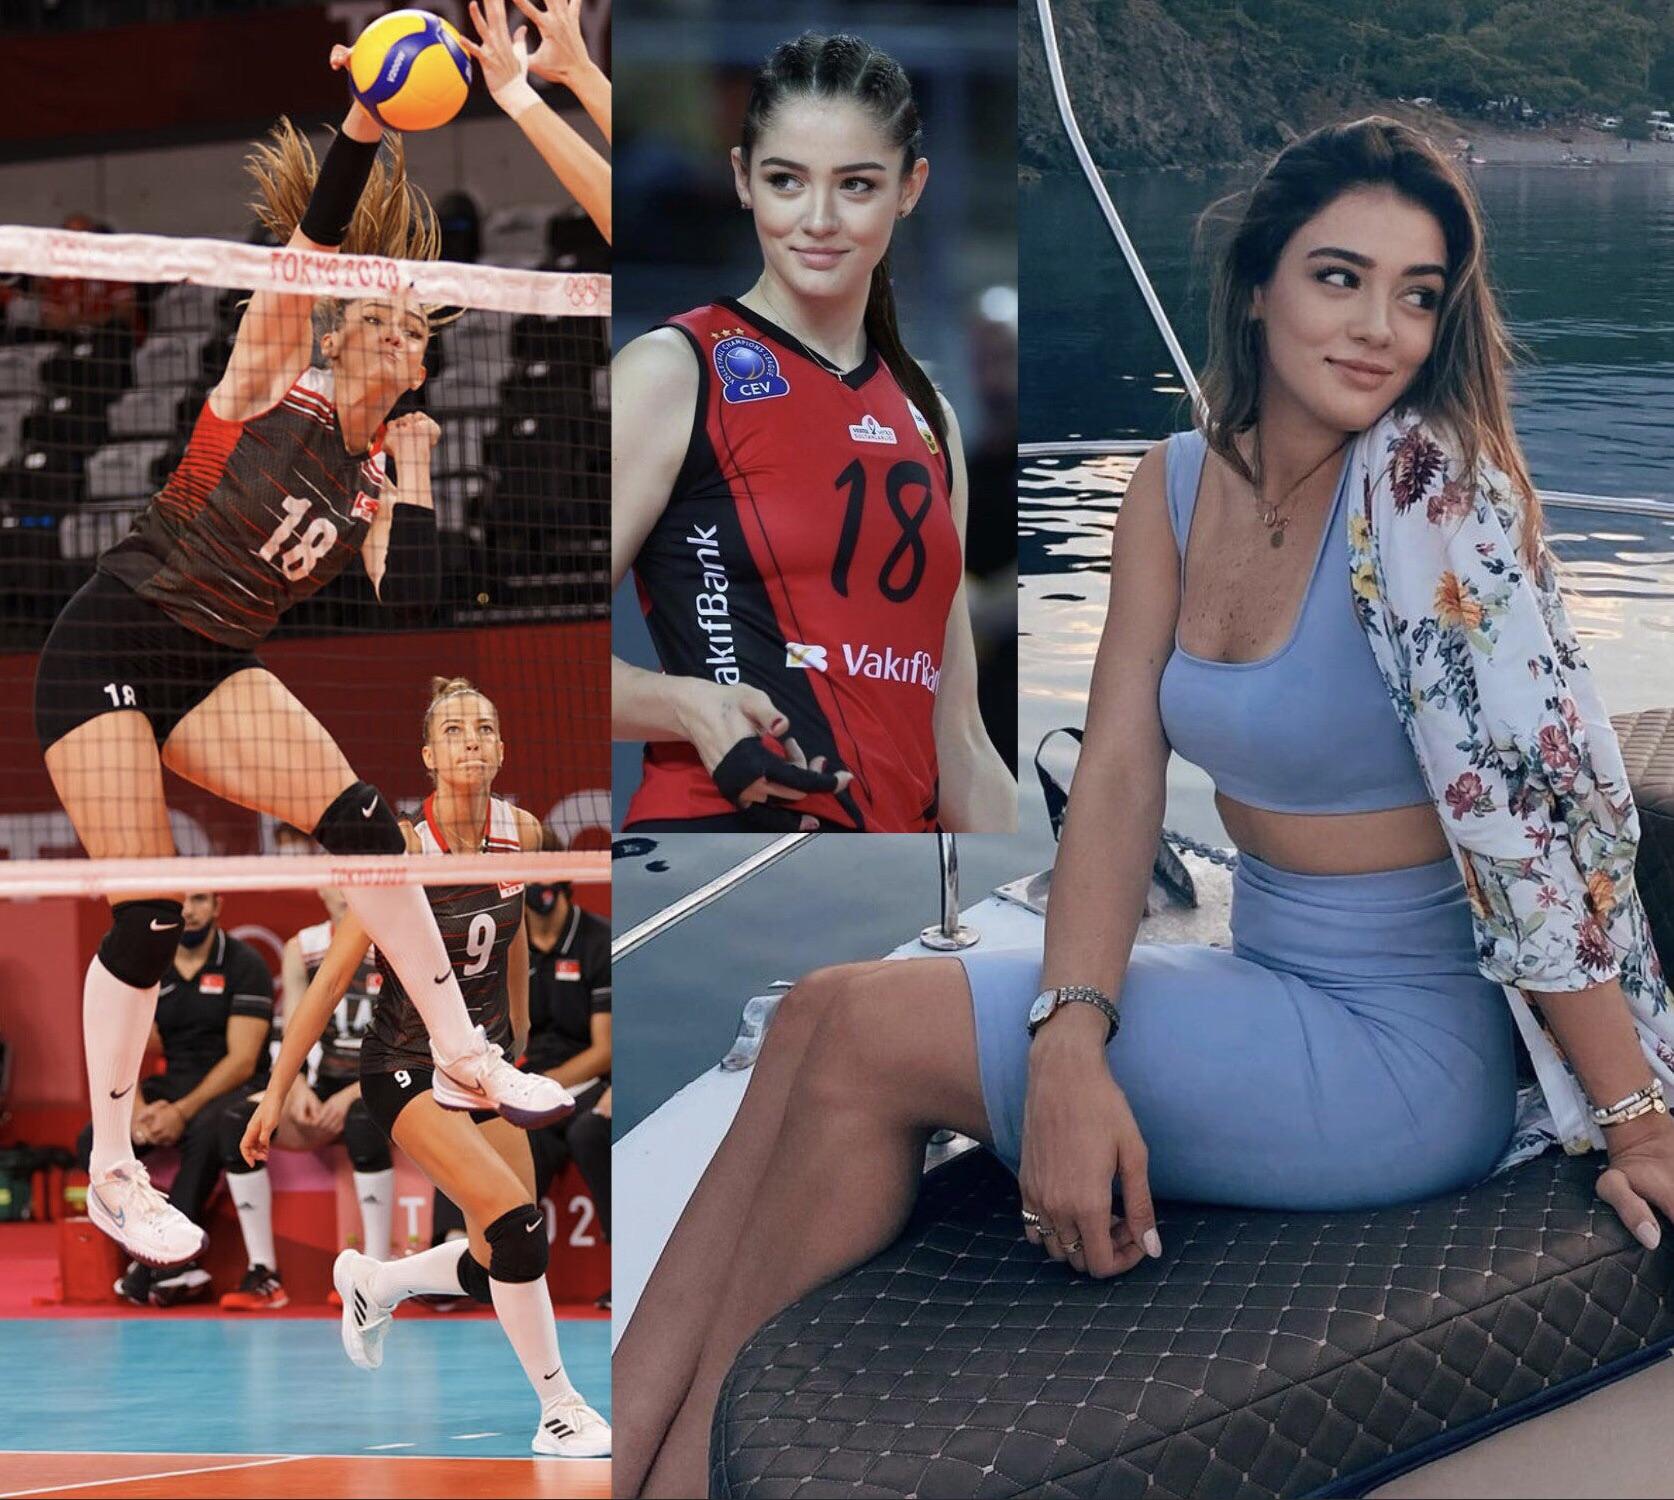 66 große türkische Volleyballspielerin Zehra Gunes